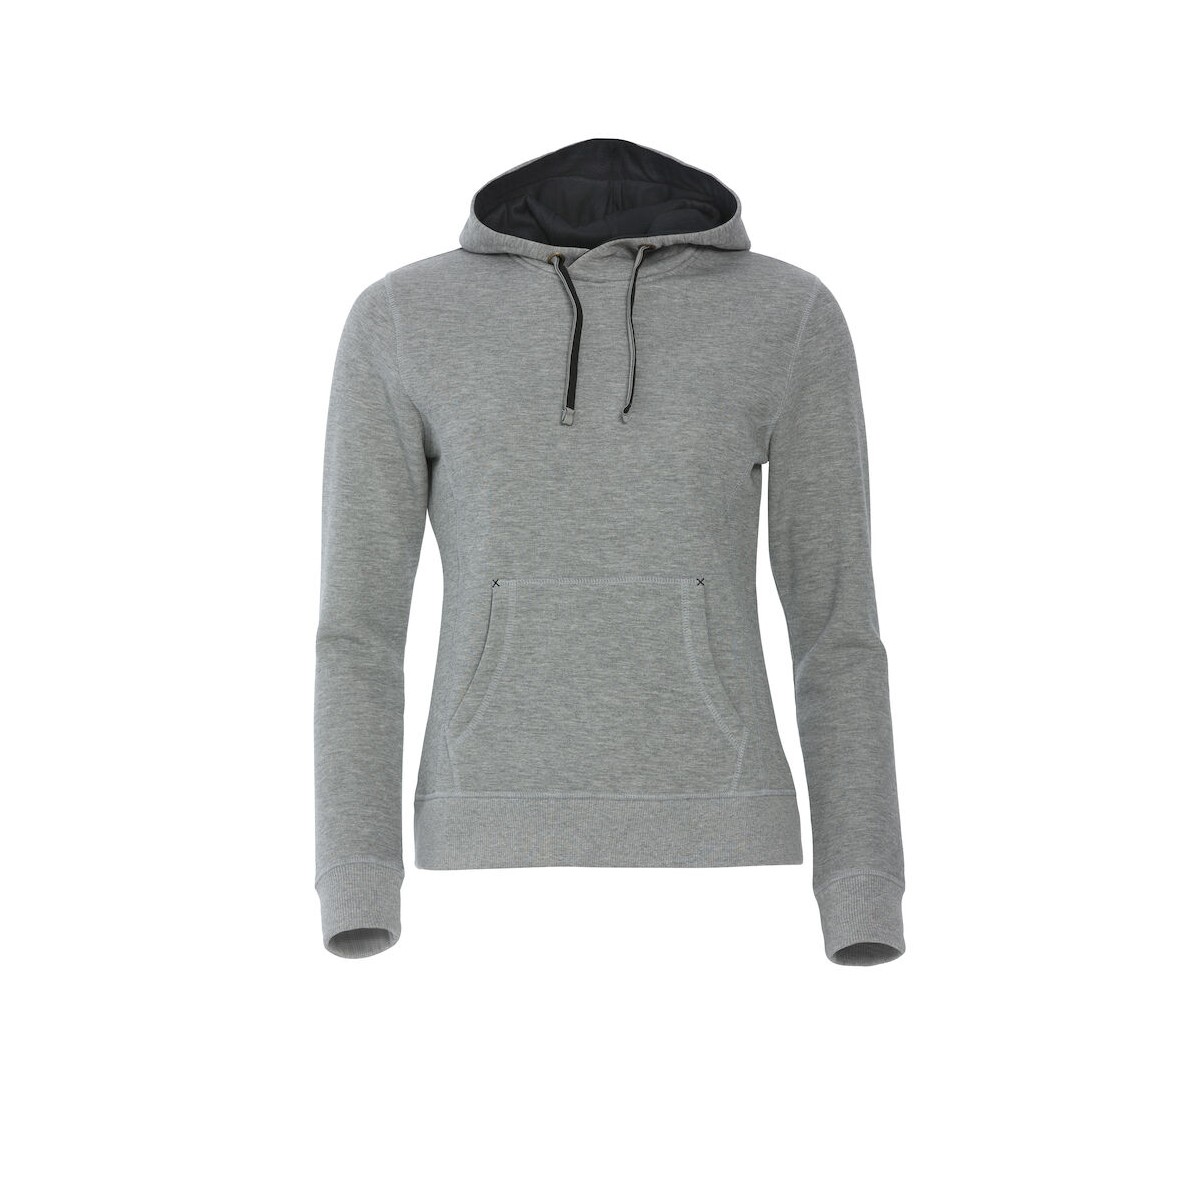 Sweatshirt à capuche - Coupe femme - Coton - Clique - Personnalisable en petite quantité - Couleur